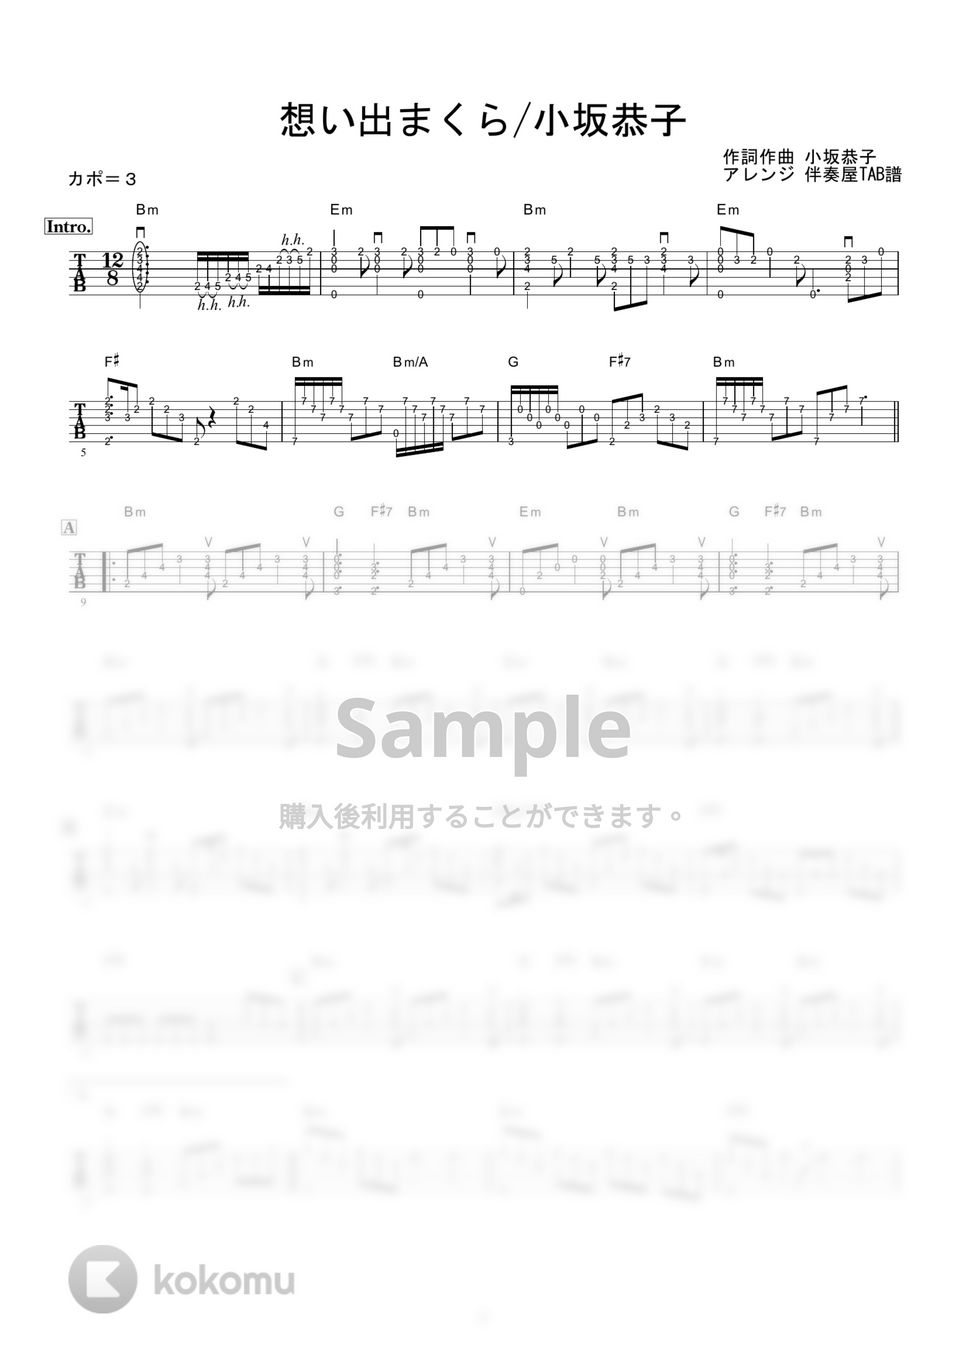 小坂恭子 - 想い出まくら (ギター伴奏/イントロ・間奏ソロギター) by 伴奏屋TAB譜